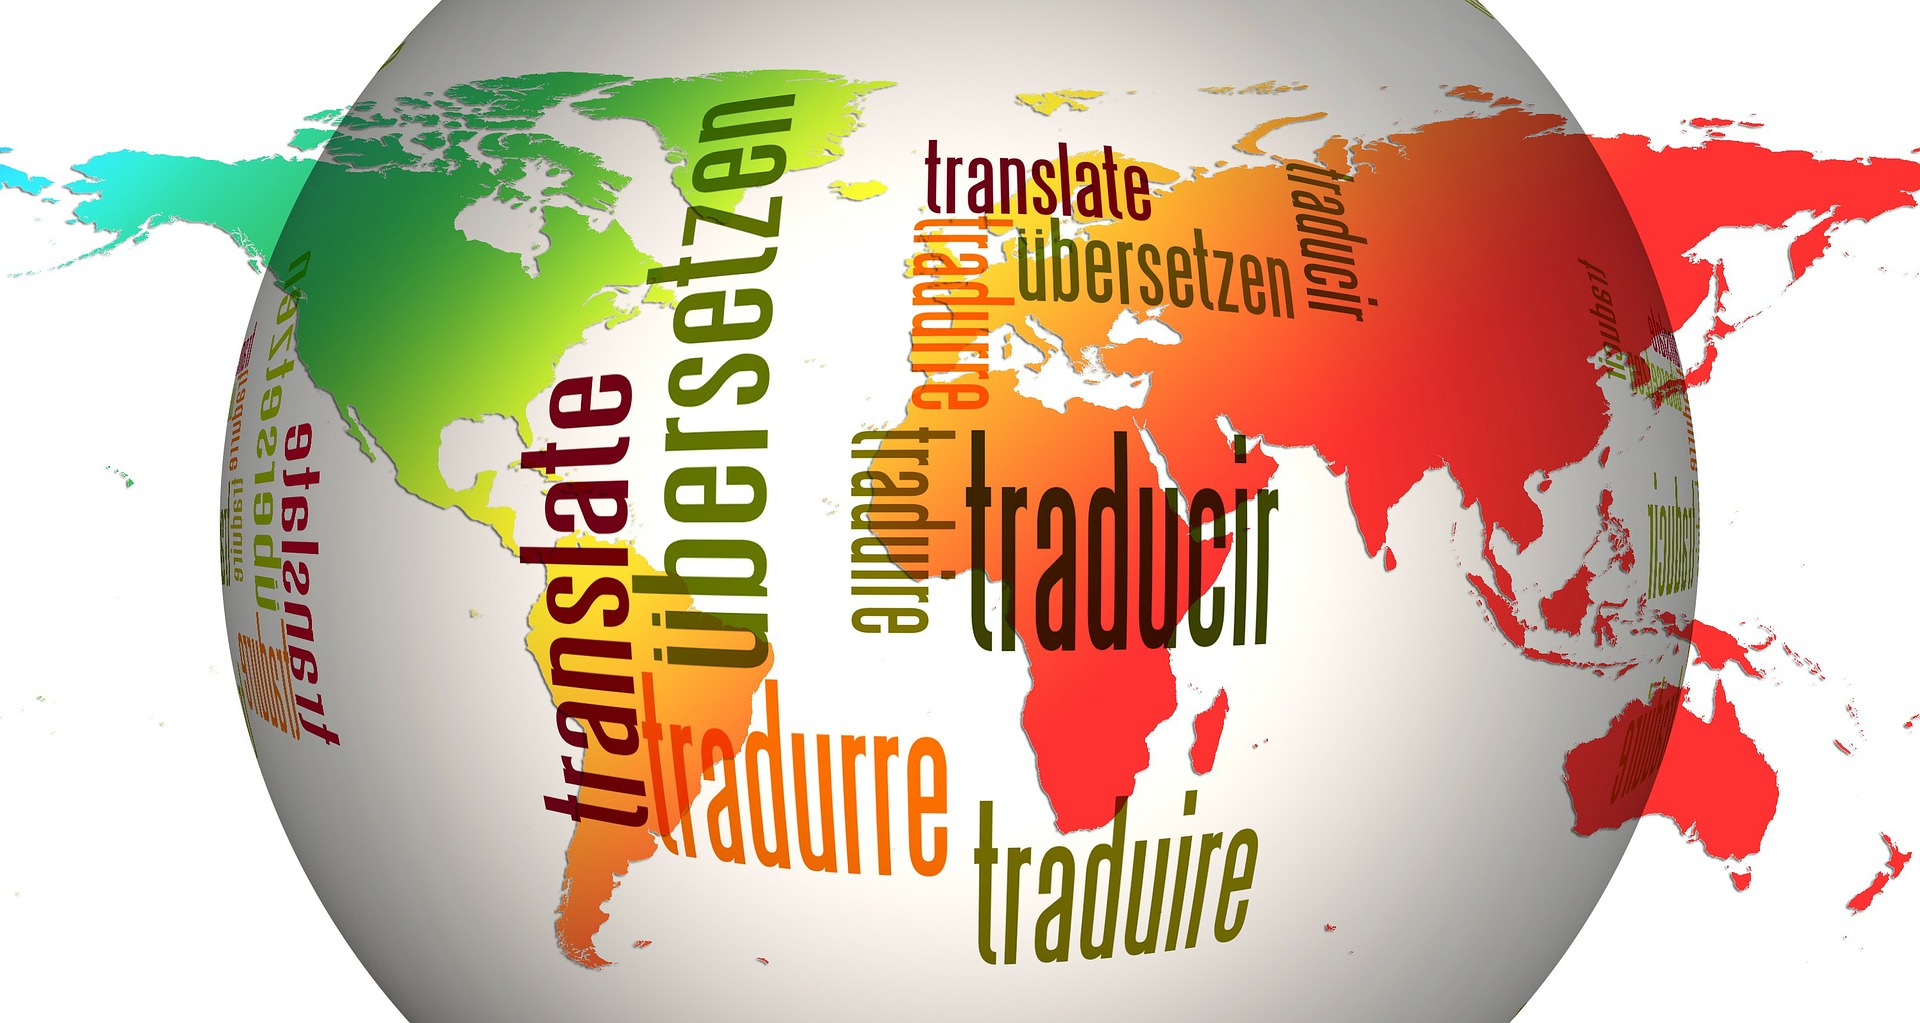 zemeguľa so slovami v rôznych jazykoch